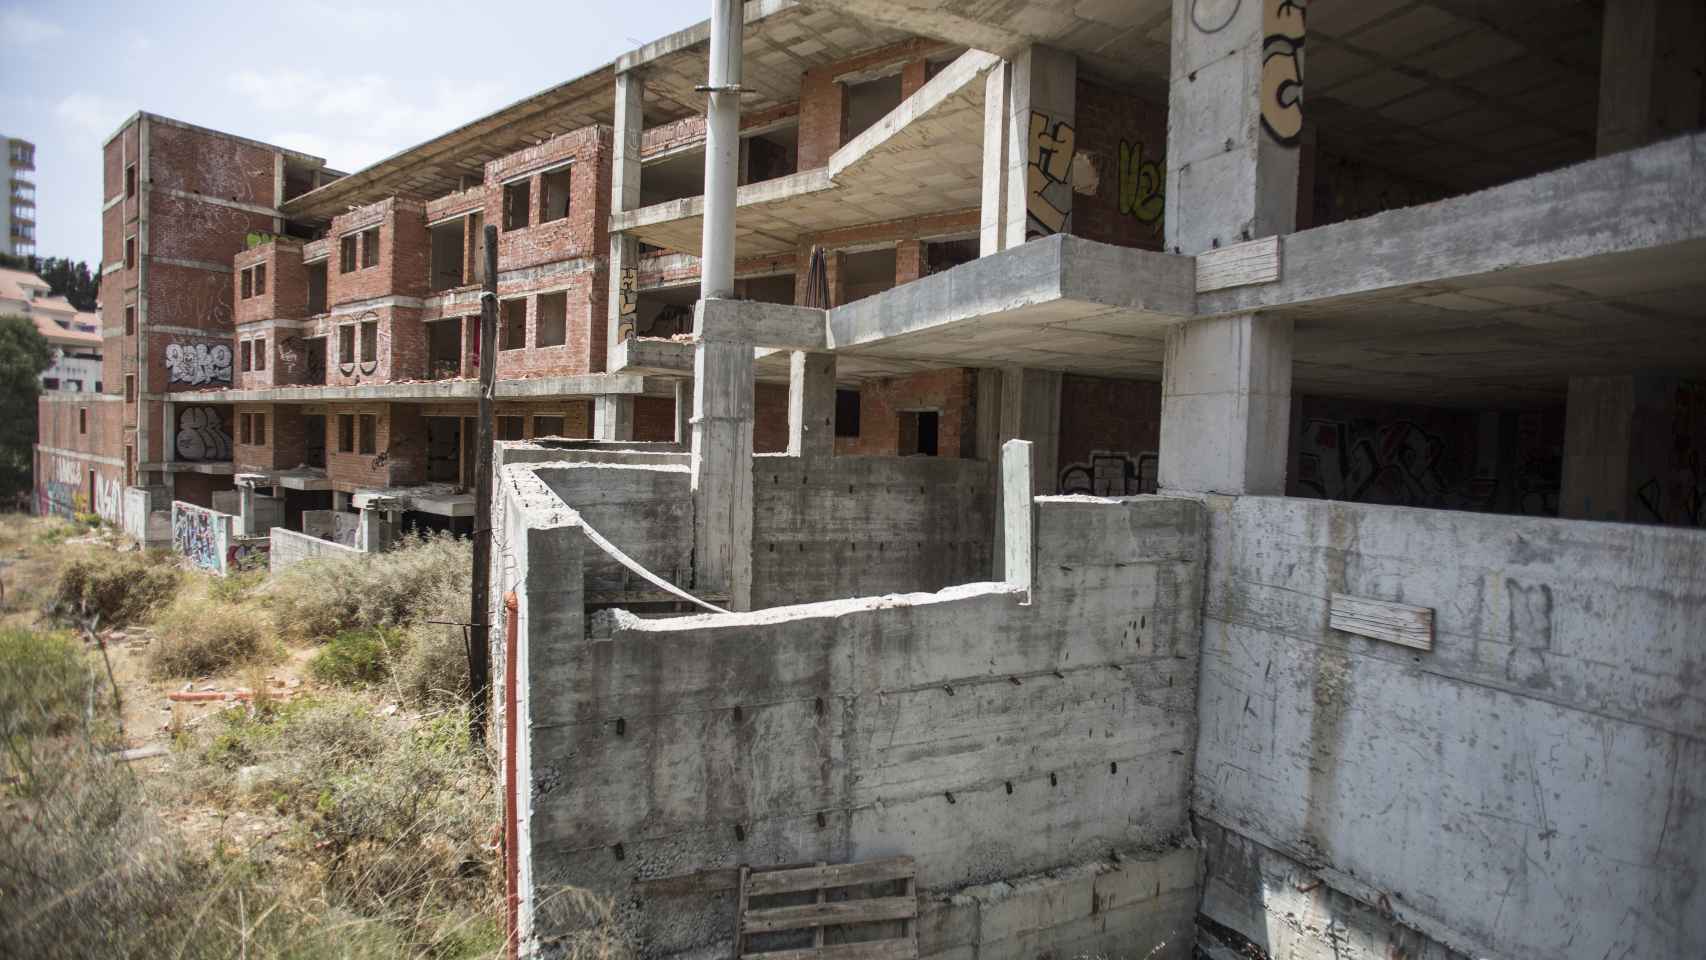 Estado actual de la urbanización de Fuengirola (Málaga) en la que debía vivir Ángela. Las viviendas, sin acabar, son presa de los grafitis y la maleza.